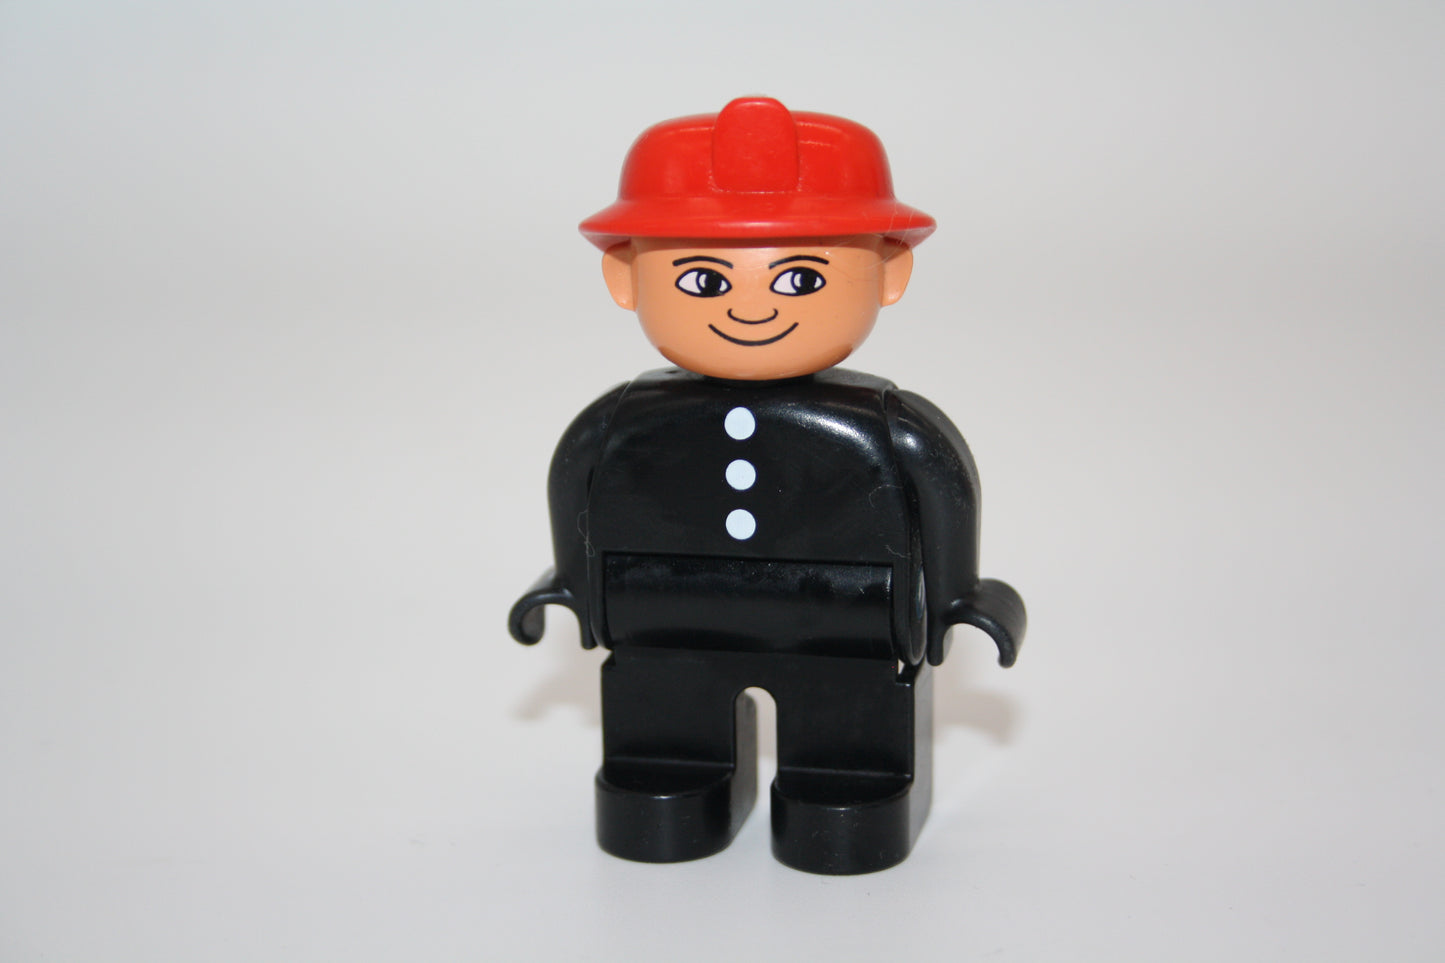 Duplo - Feuerwehrmann alt - roter Helm - Feuerwehr - Figur